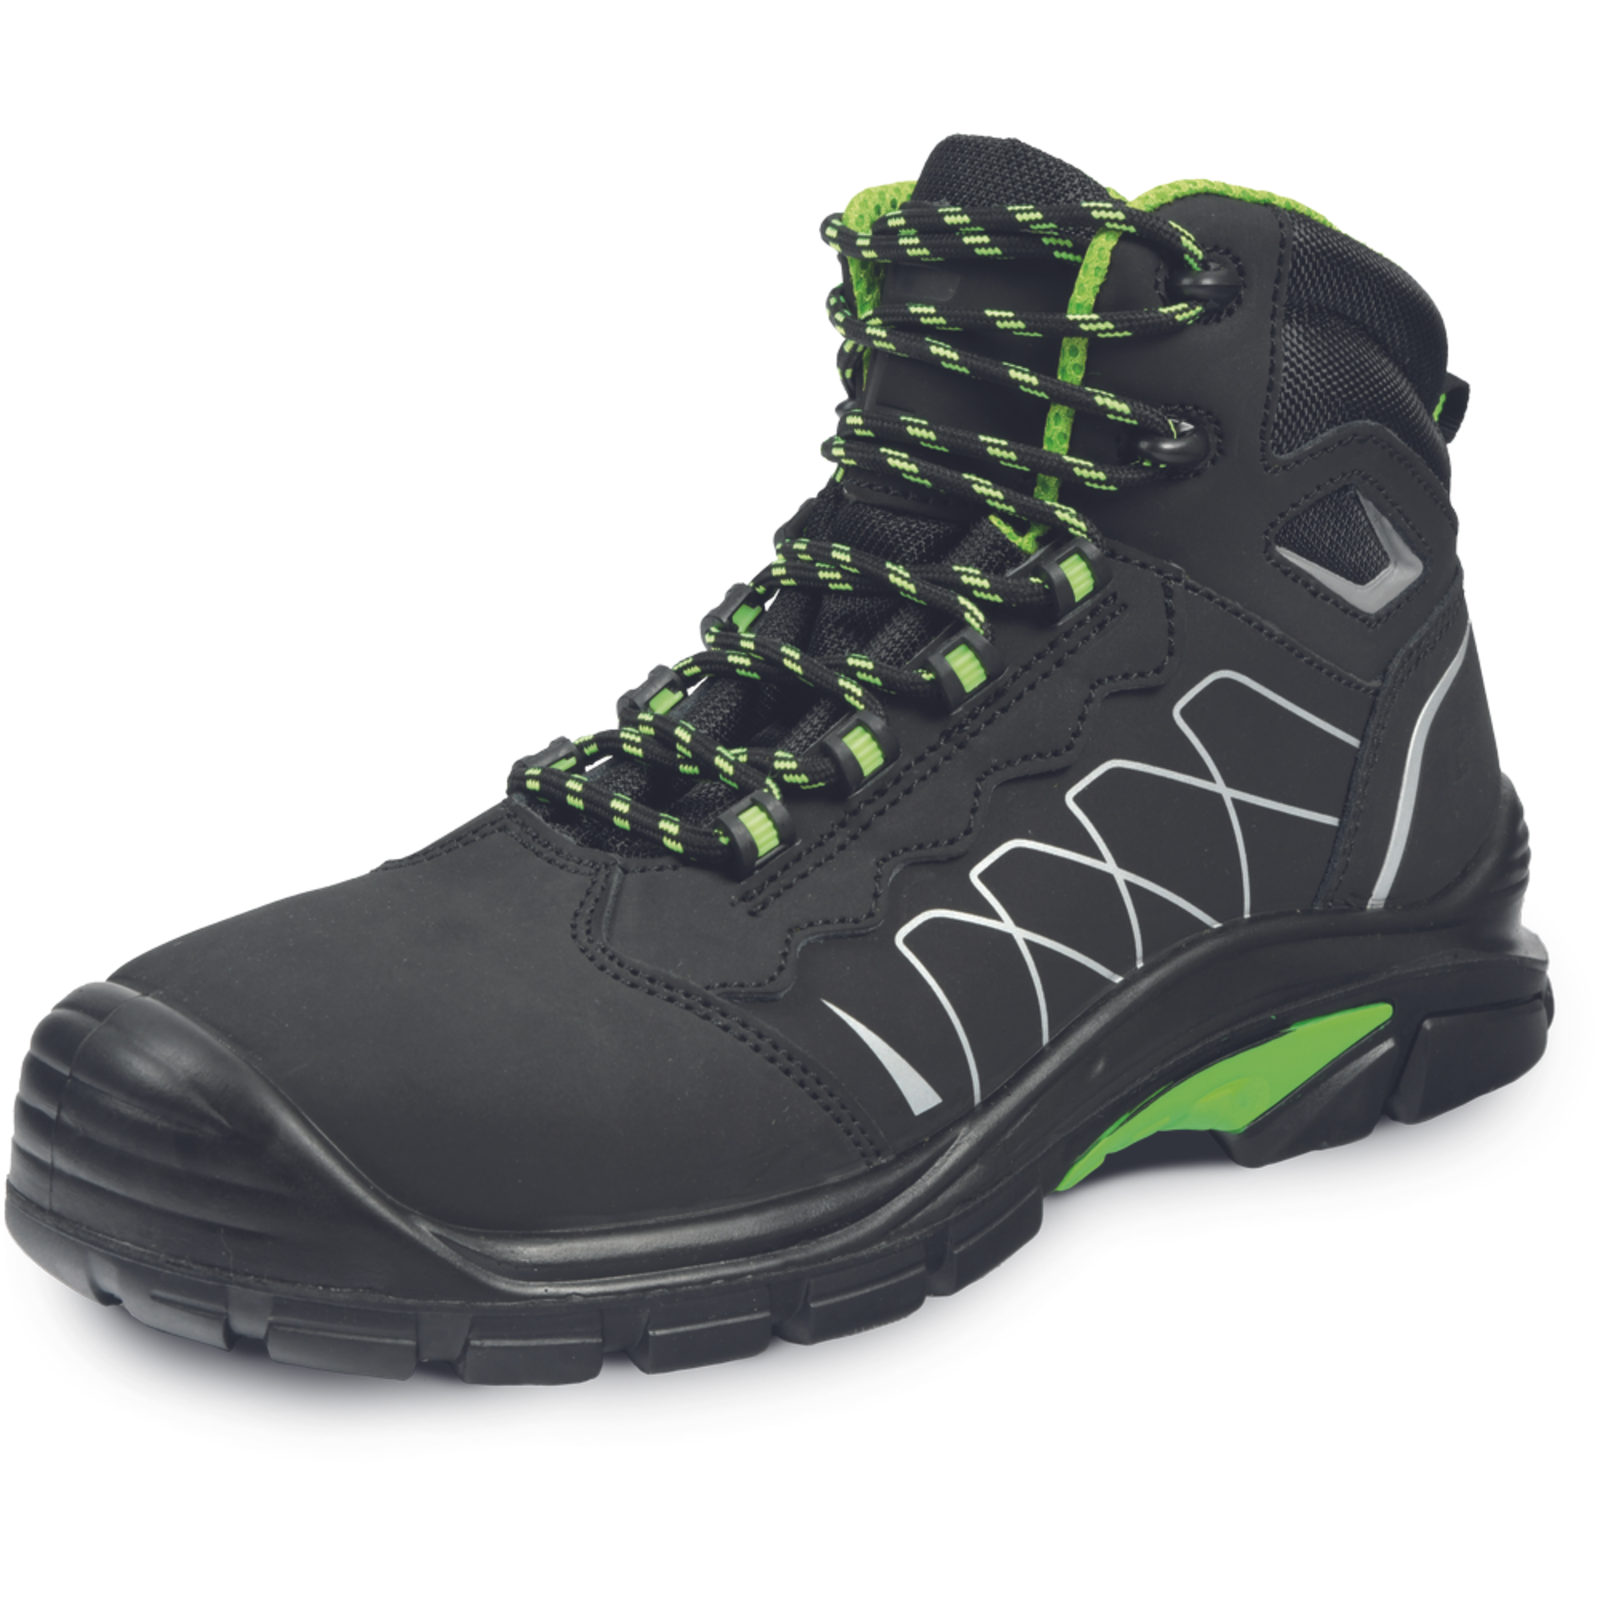 Bezpečnostná členková obuv Cerva Tornafort MF S3 SRC - veľkosť: 41, farba: čierna/zelená